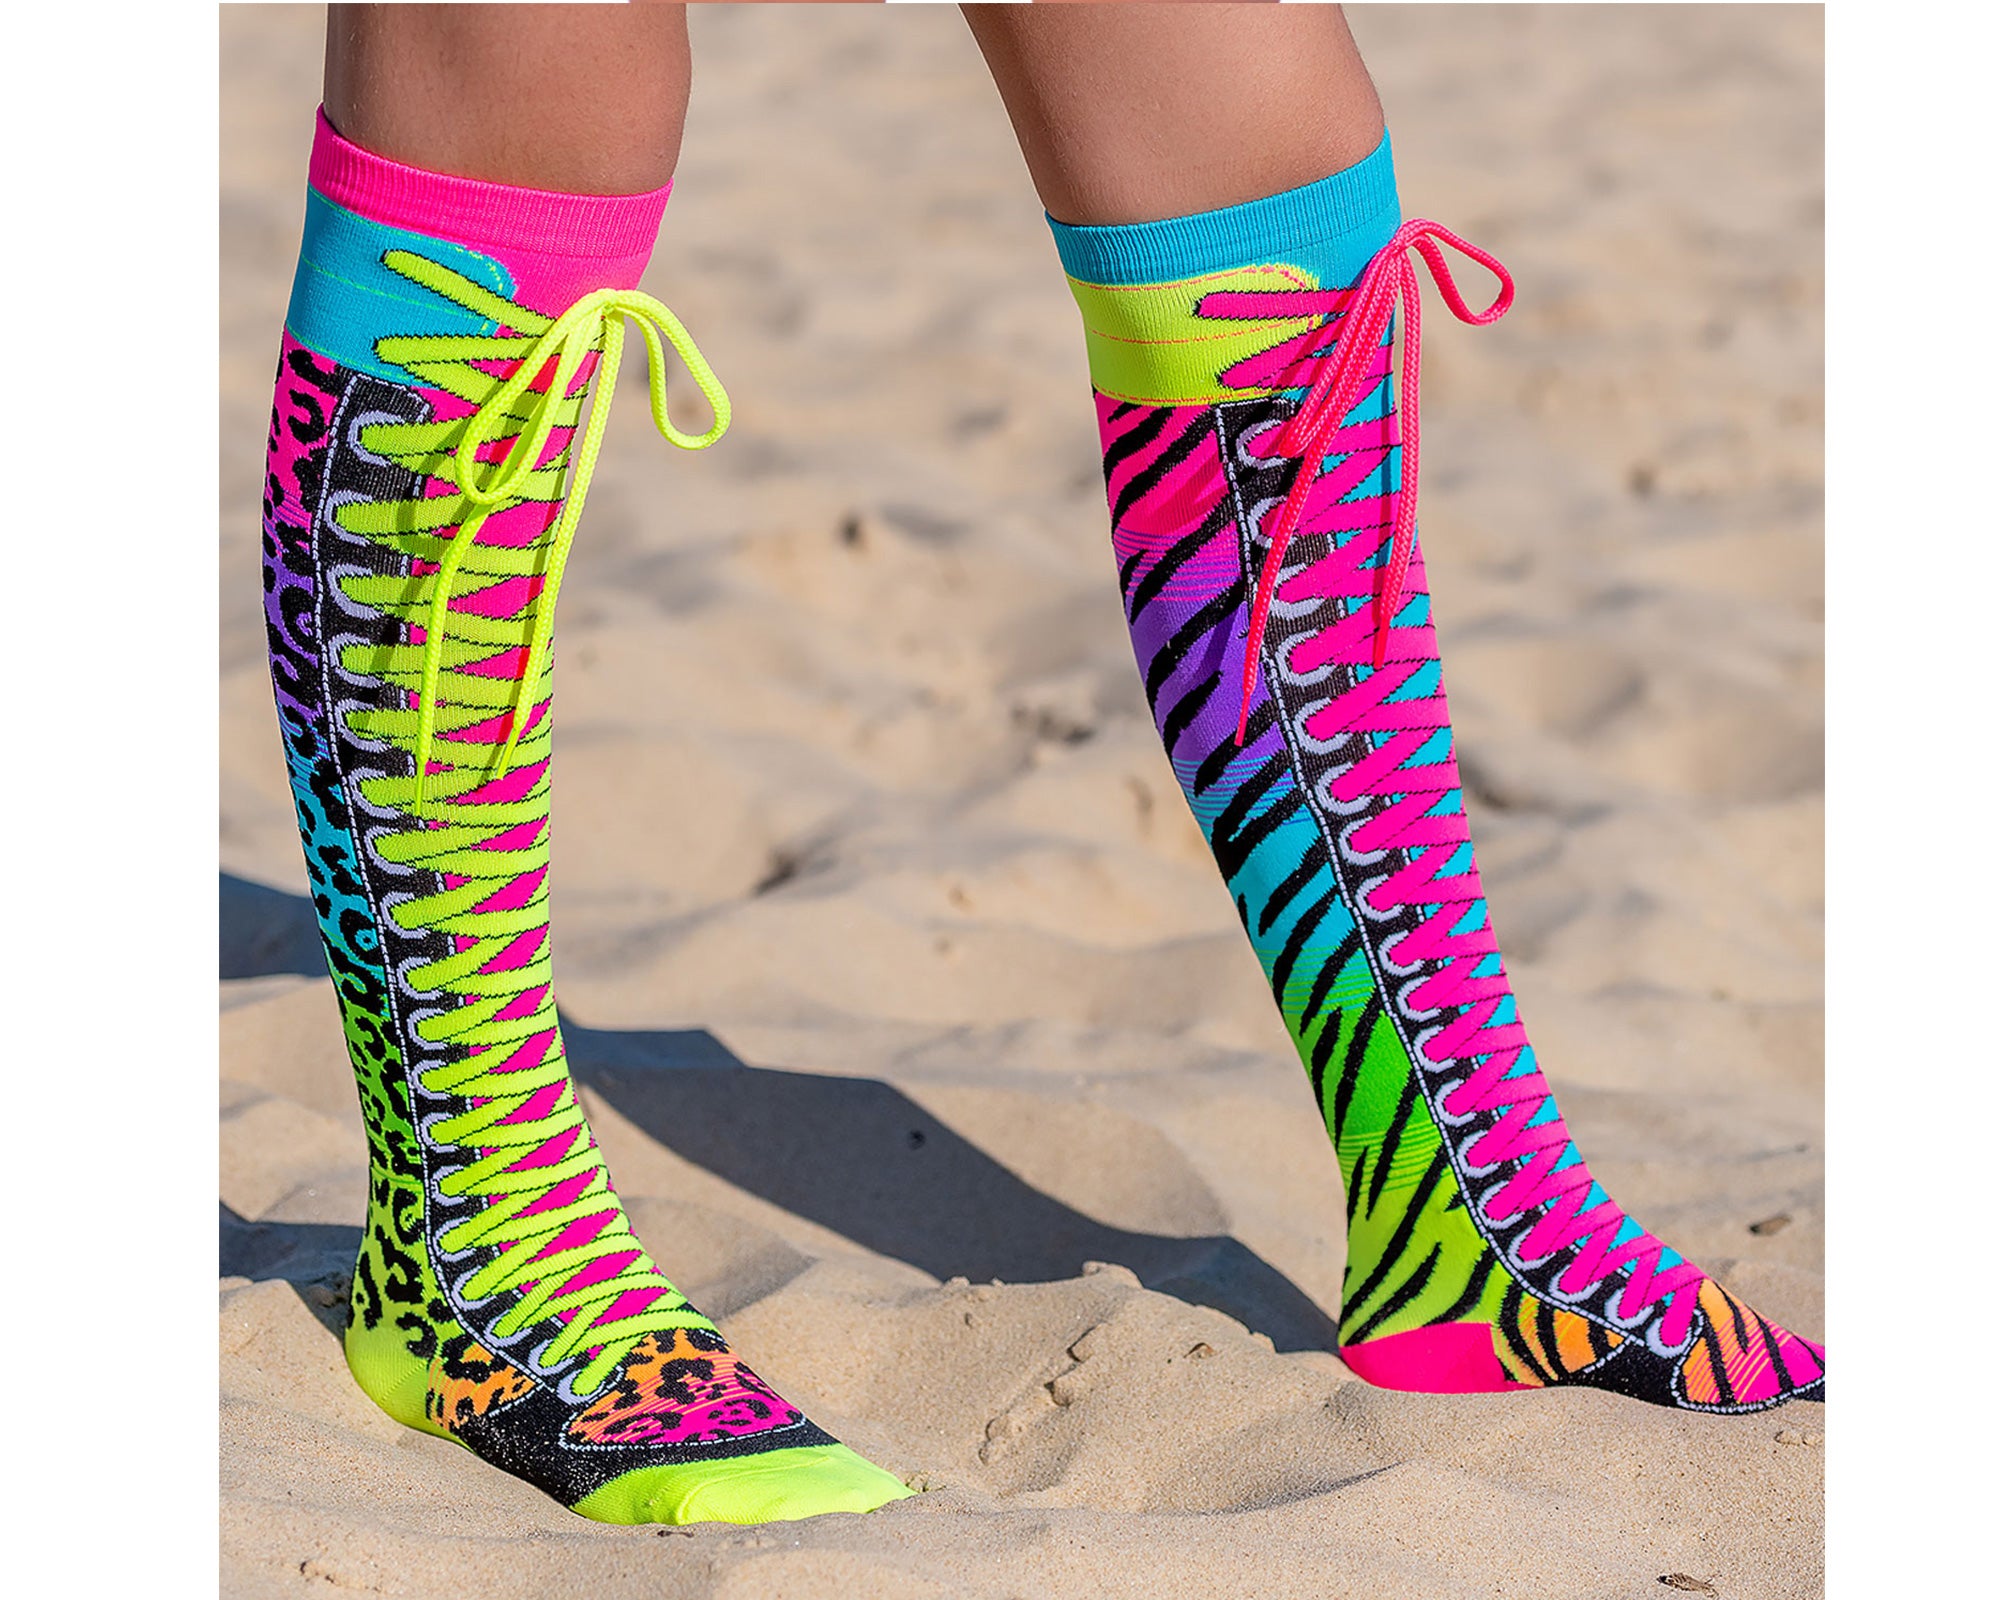 Les chaussettes Safari sont une paire à mélanger et assortir, avec un imprimé léopard et zèbre pour partir à l'aventure tout en restant fashion ! 